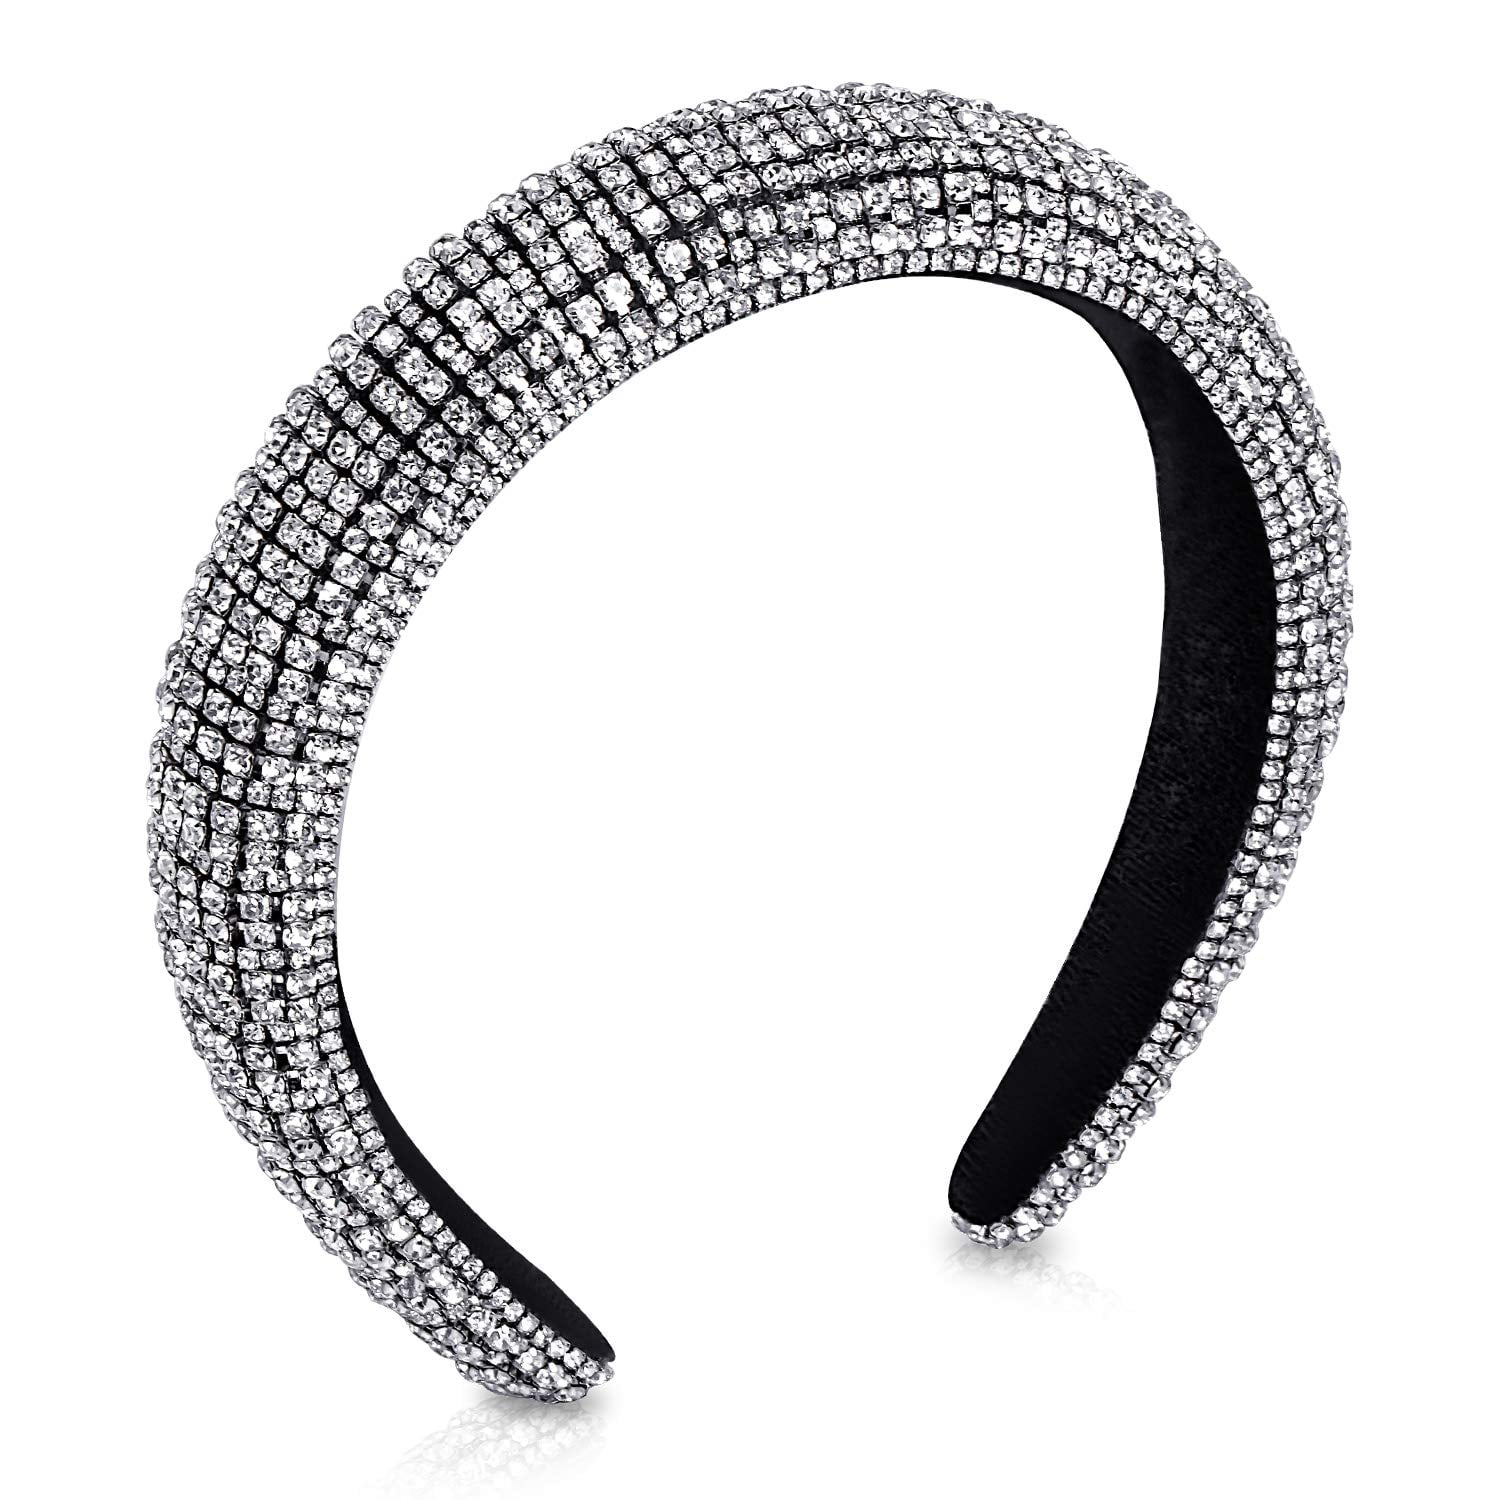 Diamond headband |resin drill headband 1.5cm headband|gift for her party headband |shiny headband color headband |narrow edge headband